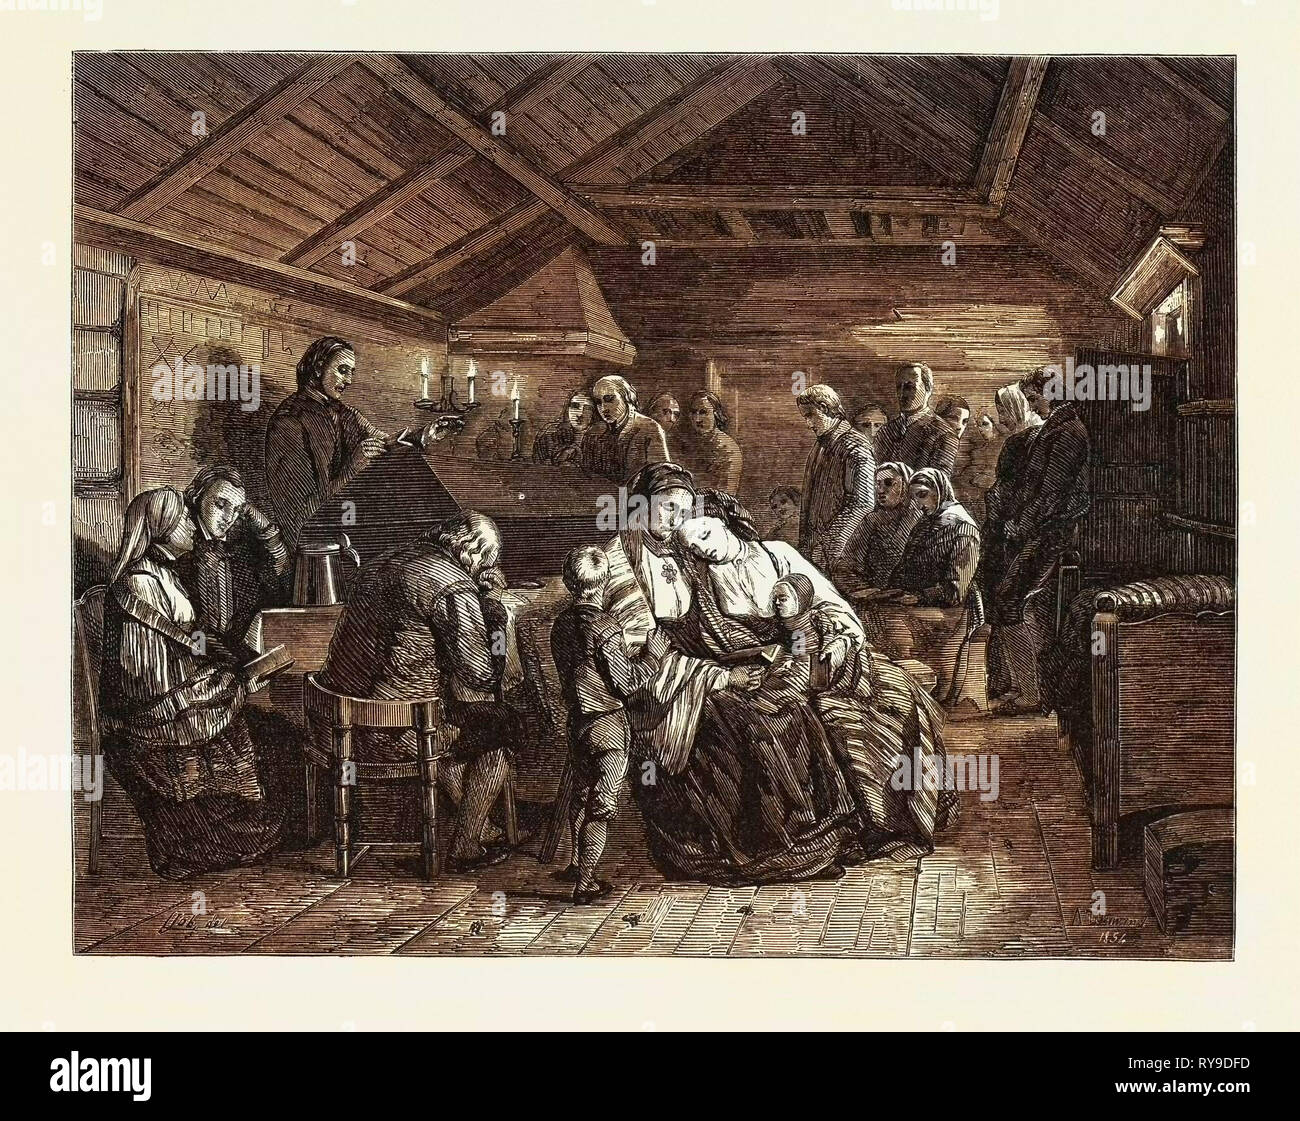 Salon de 1855. La Norvège. Les funérailles en milieu rural, la gravure de la Norvège Banque D'Images